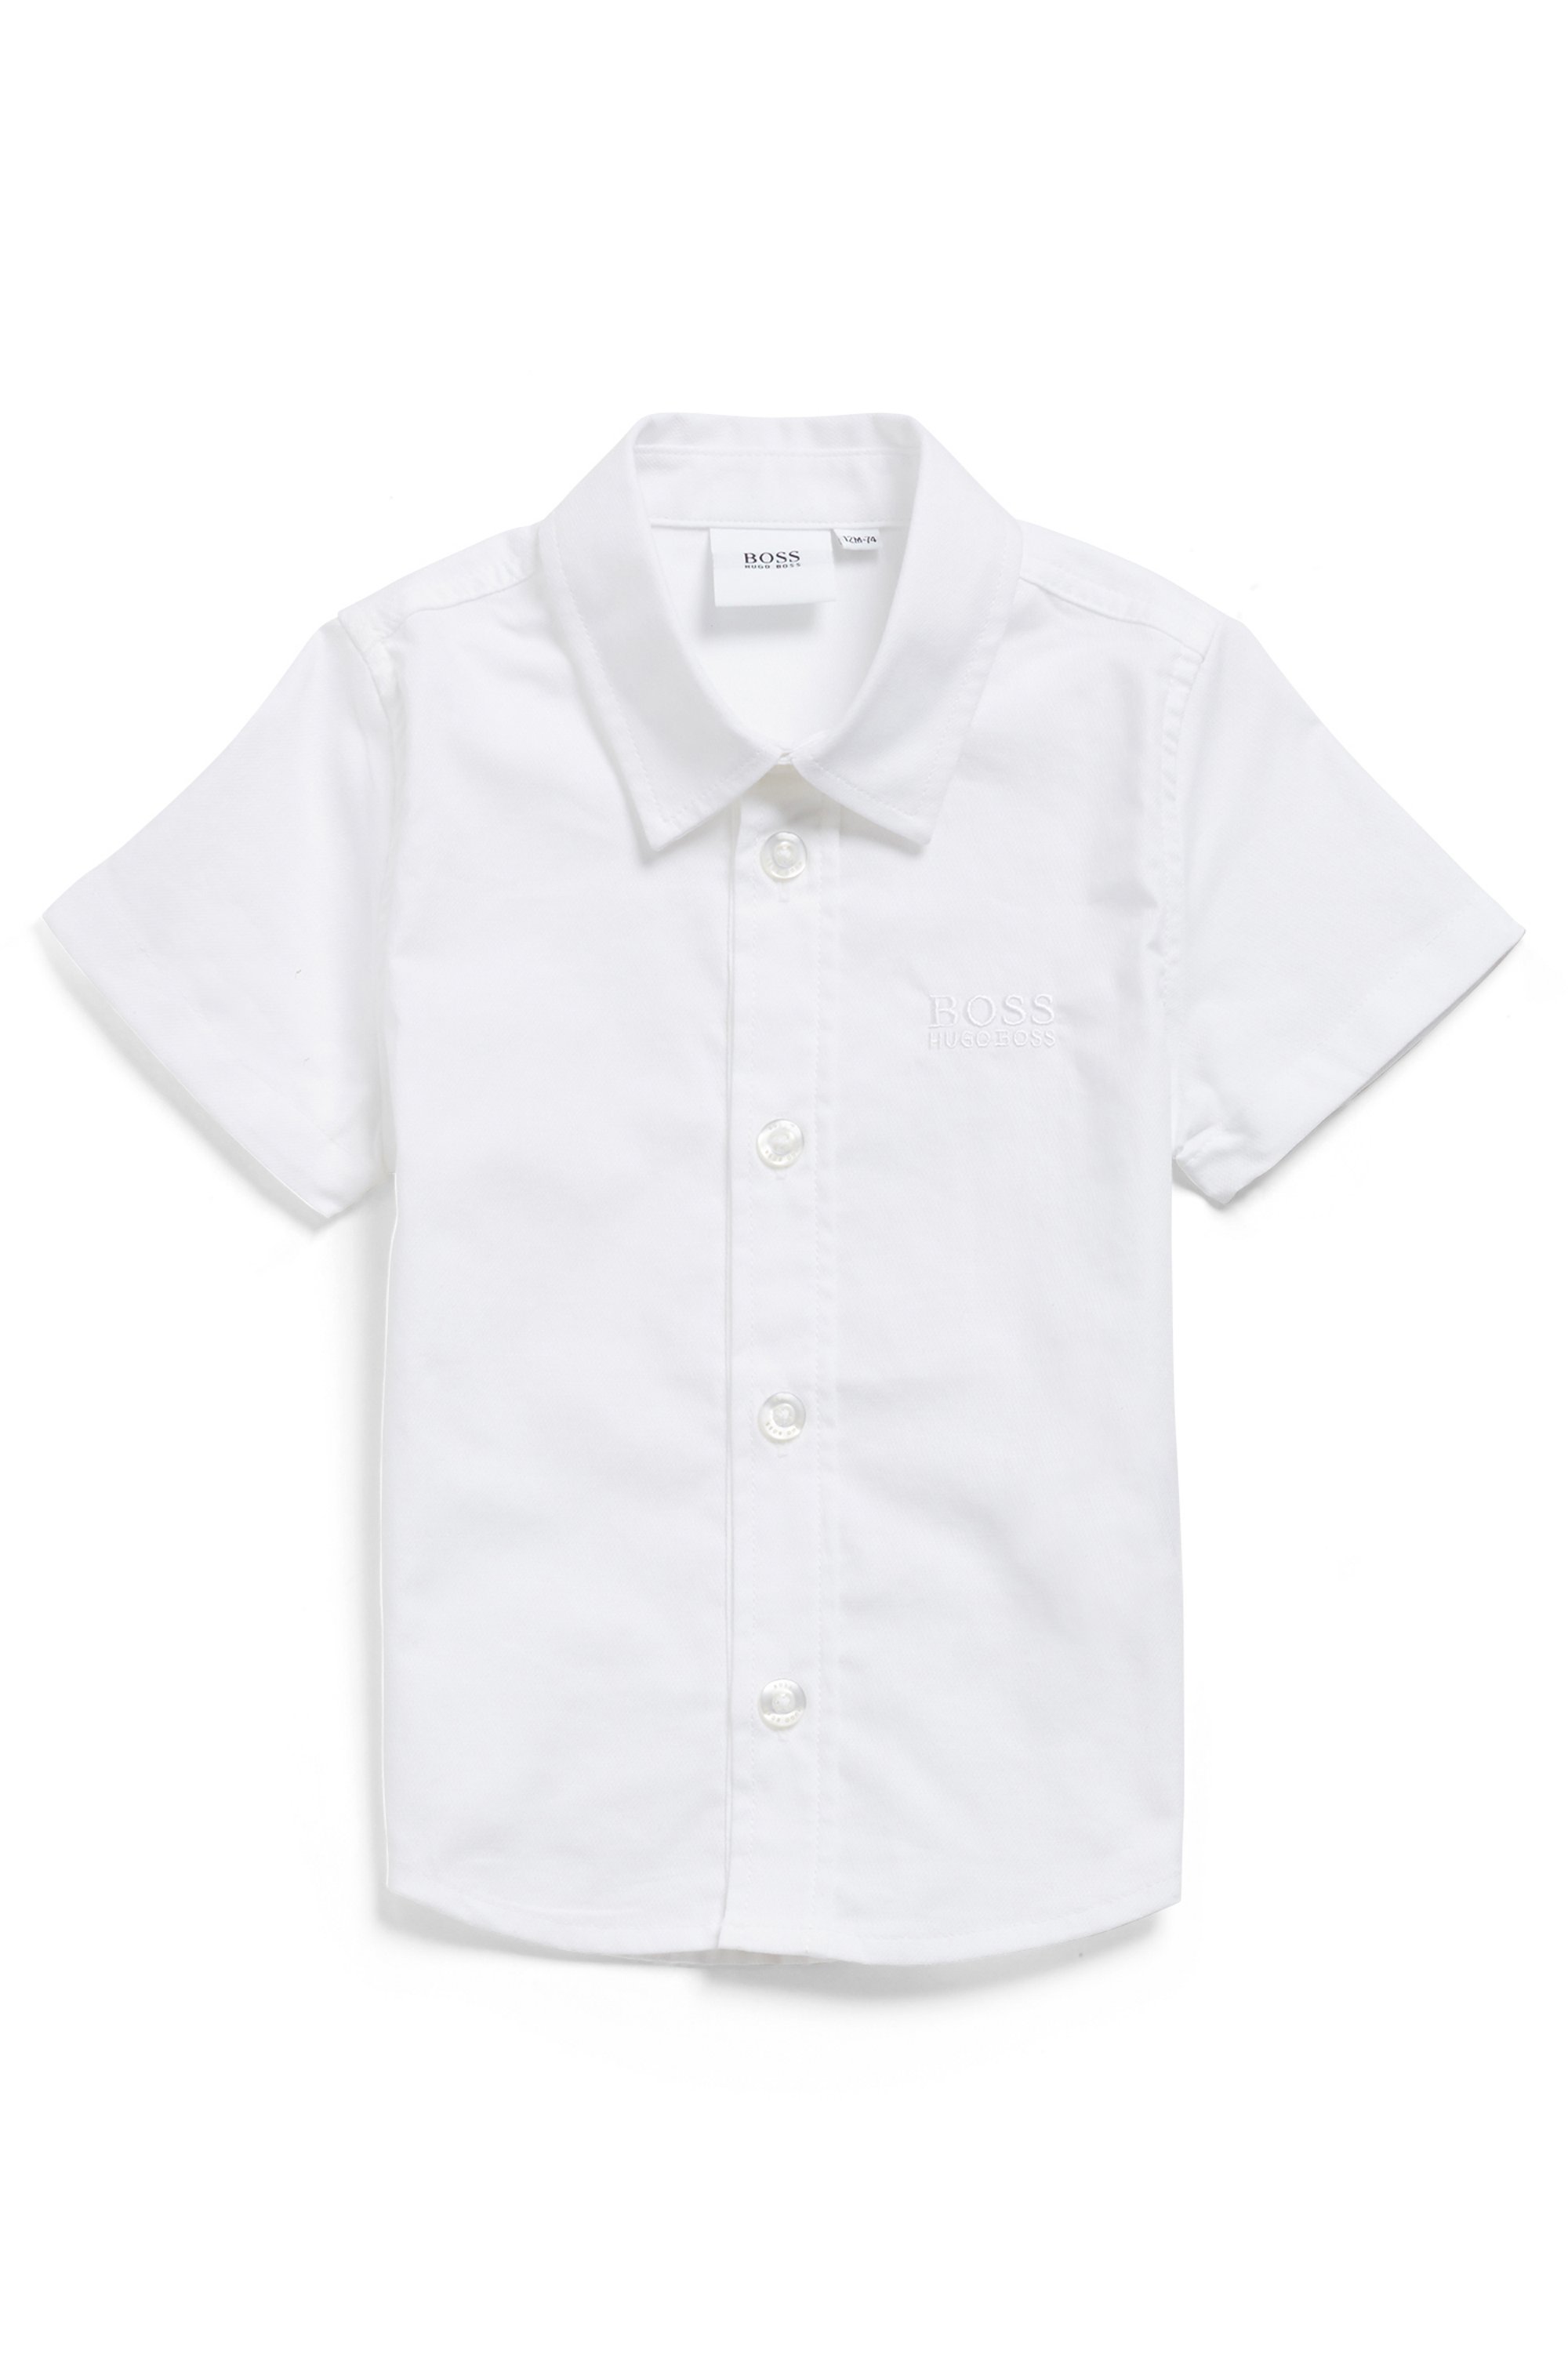 Chemise à manches courtes en coton pour enfant, avec logo brodé, Blanc